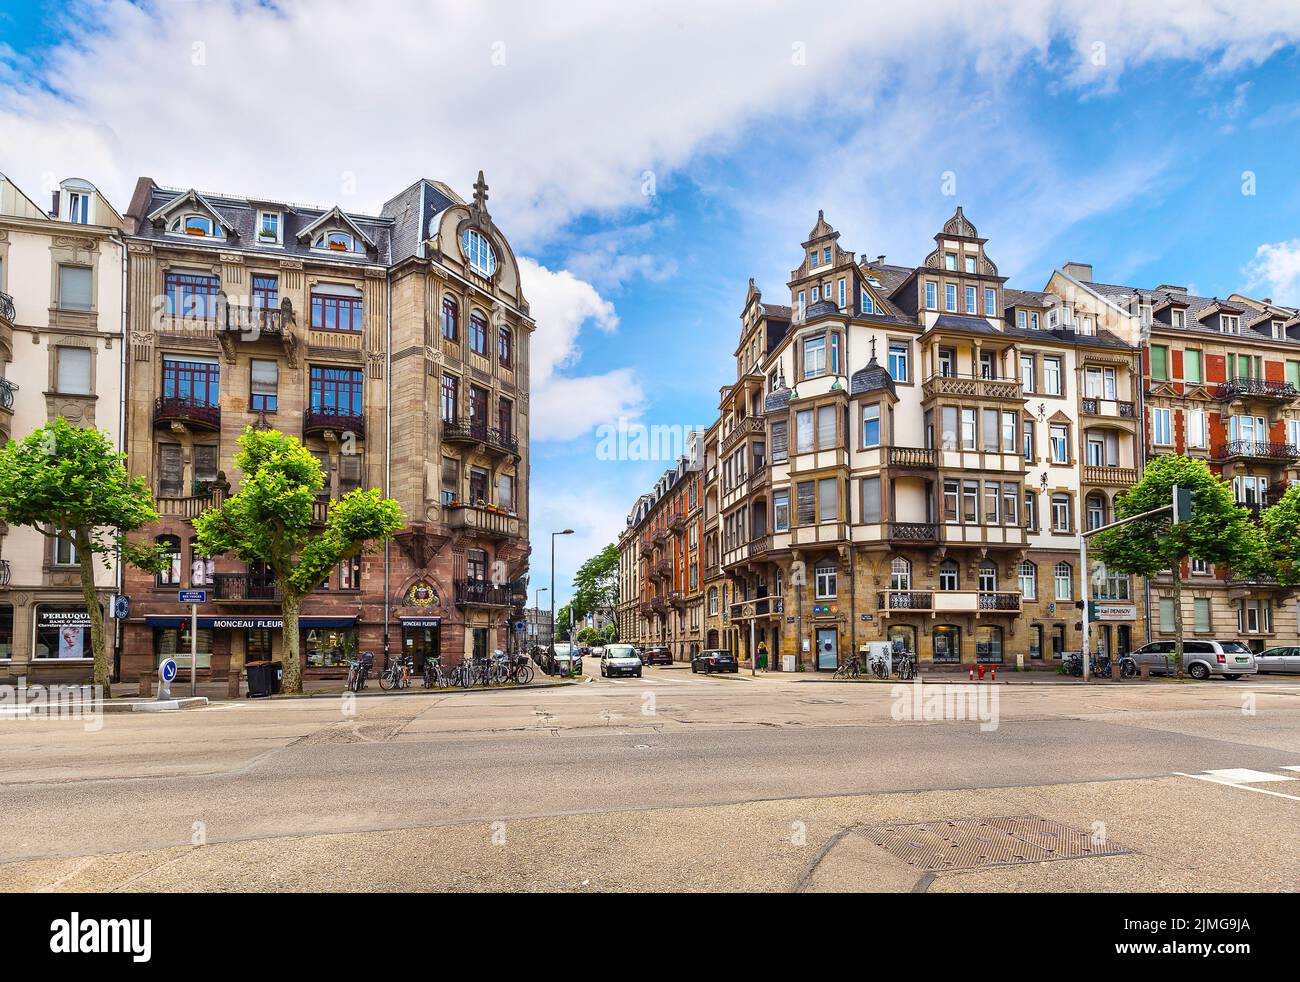 Strasbourg, France - 7 juillet 2019 : centre de Strasbourg avec de beaux immeubles d'appartements Banque D'Images